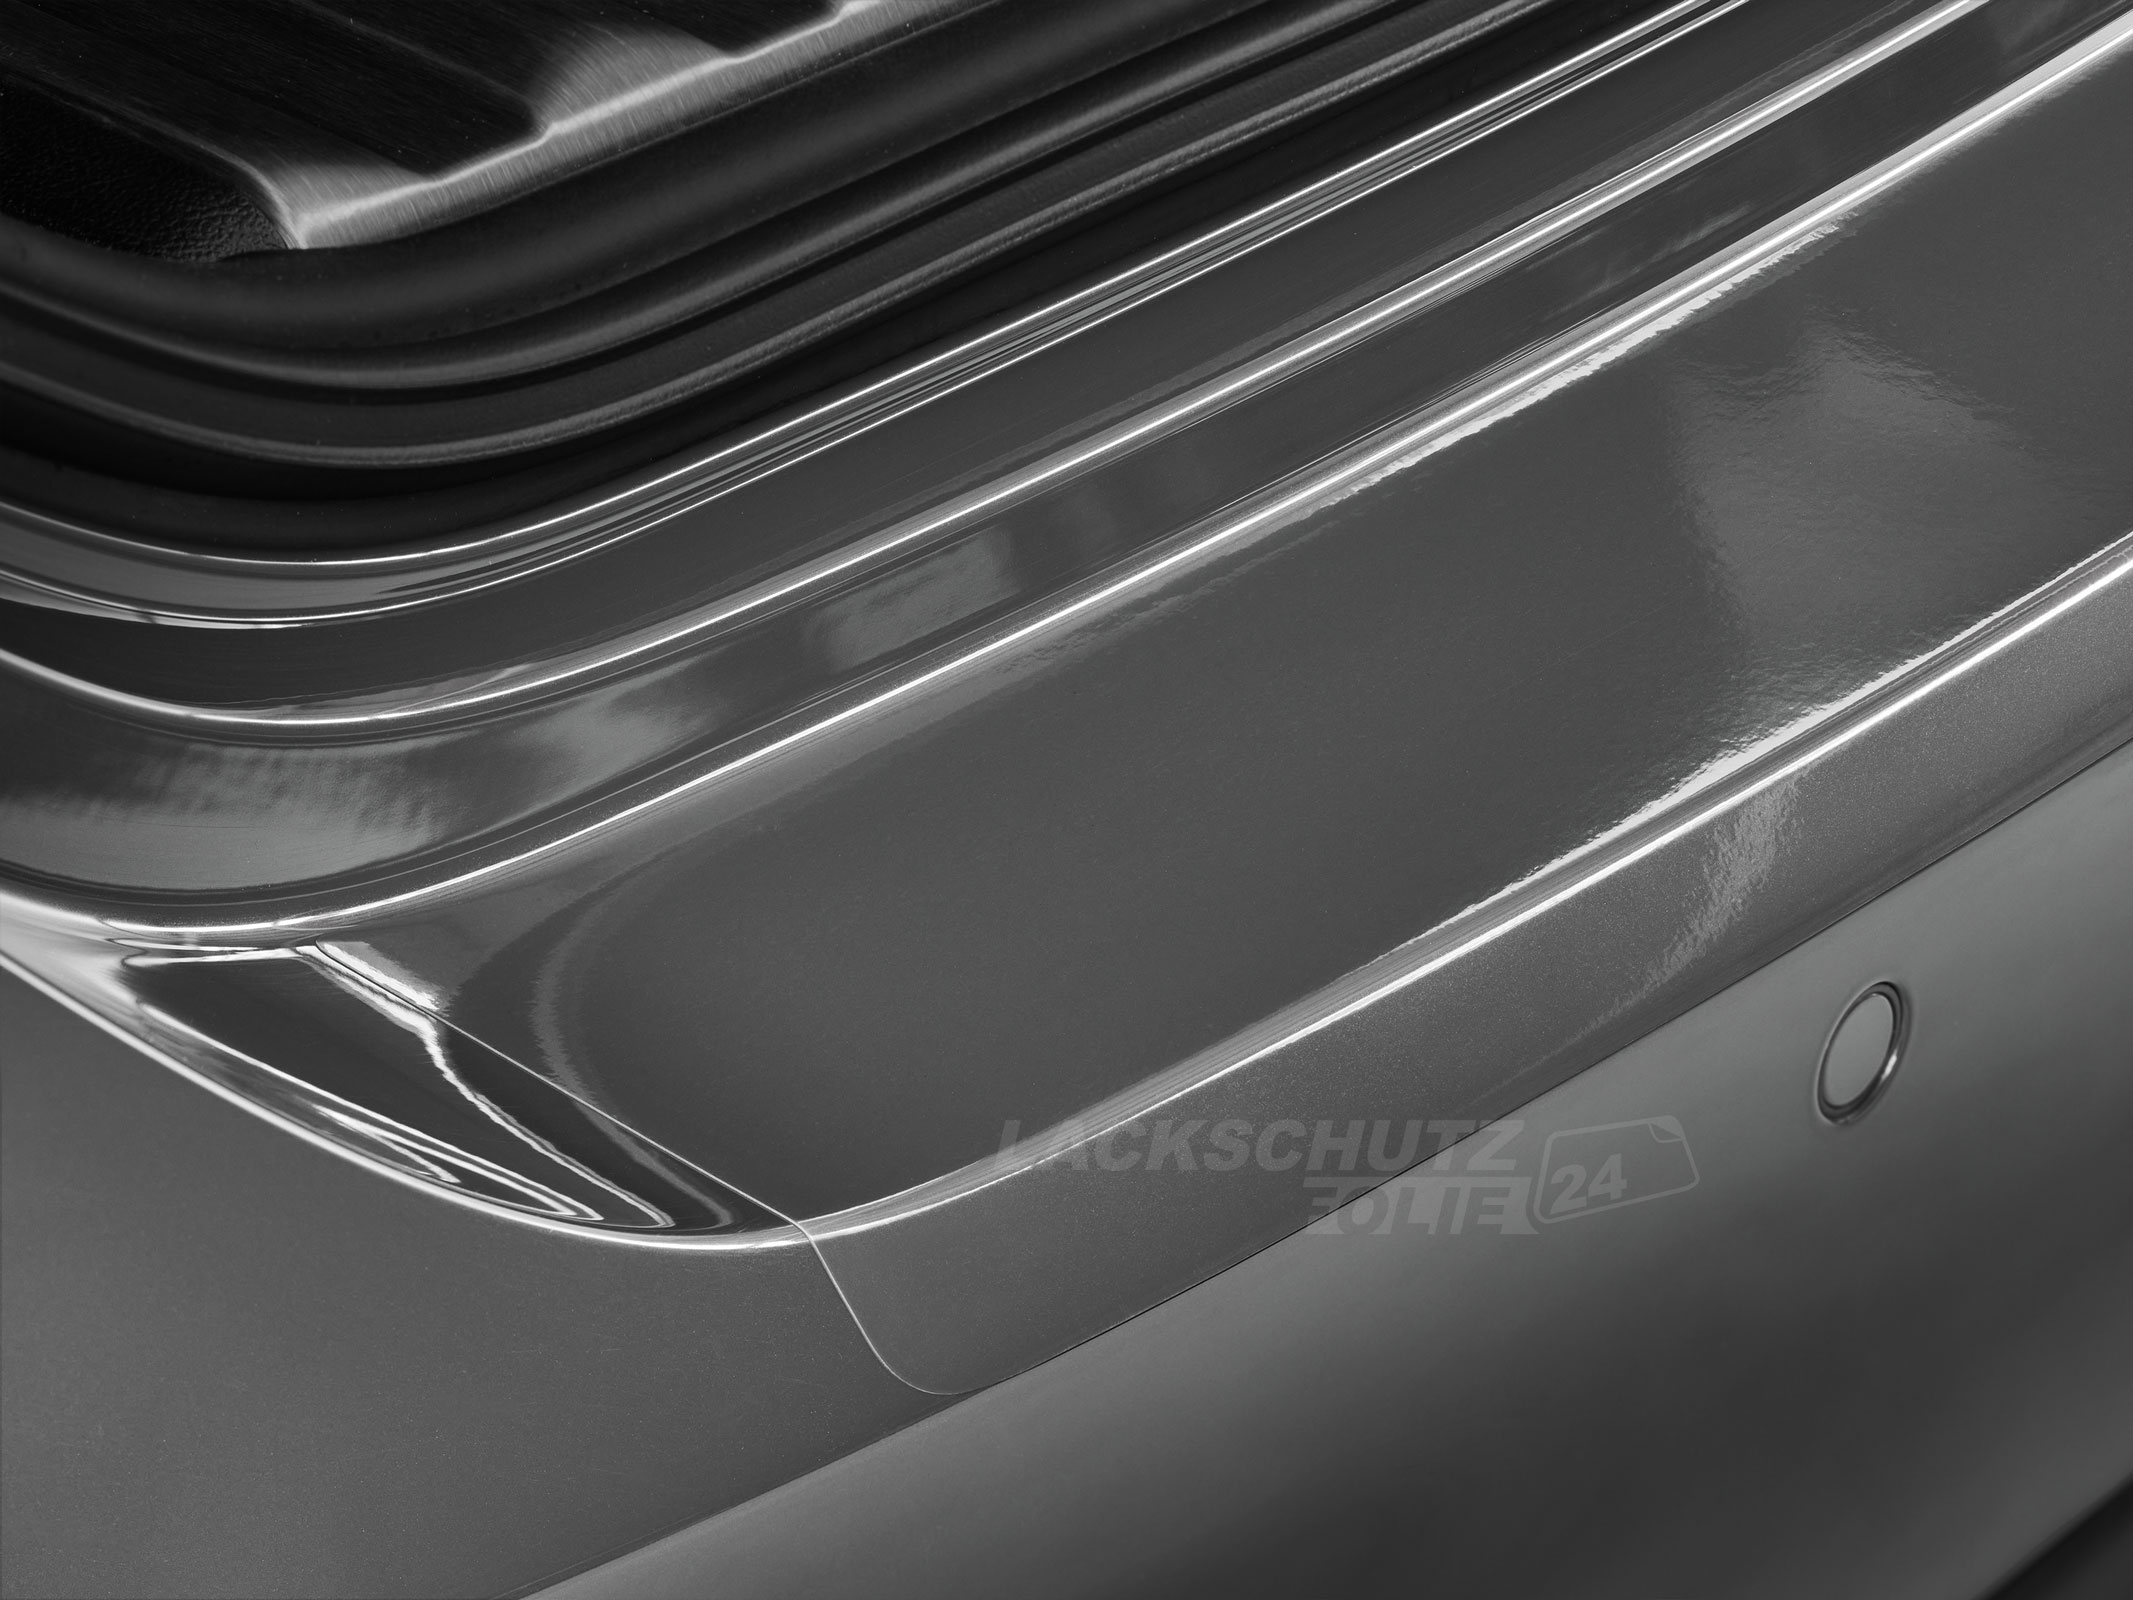 Ladekantenschutzfolie - Transparent Glatt Hochglänzend 150 µm stark für VW / Volkswagen Caddy (V) ab BJ 11/2020